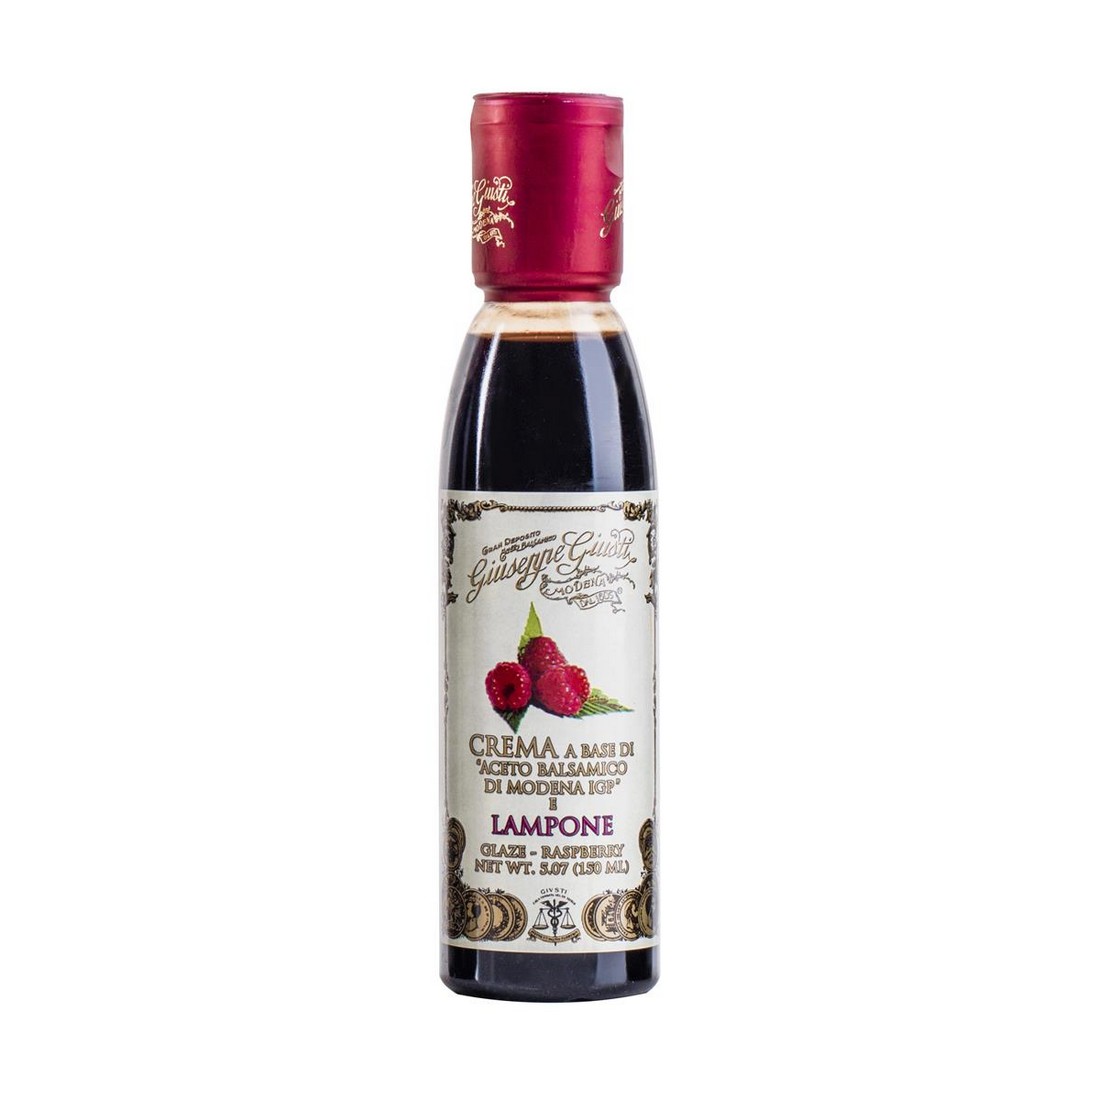 Cream based on balsamic vinegar of Modena PGI - Raspberry - 150 ml